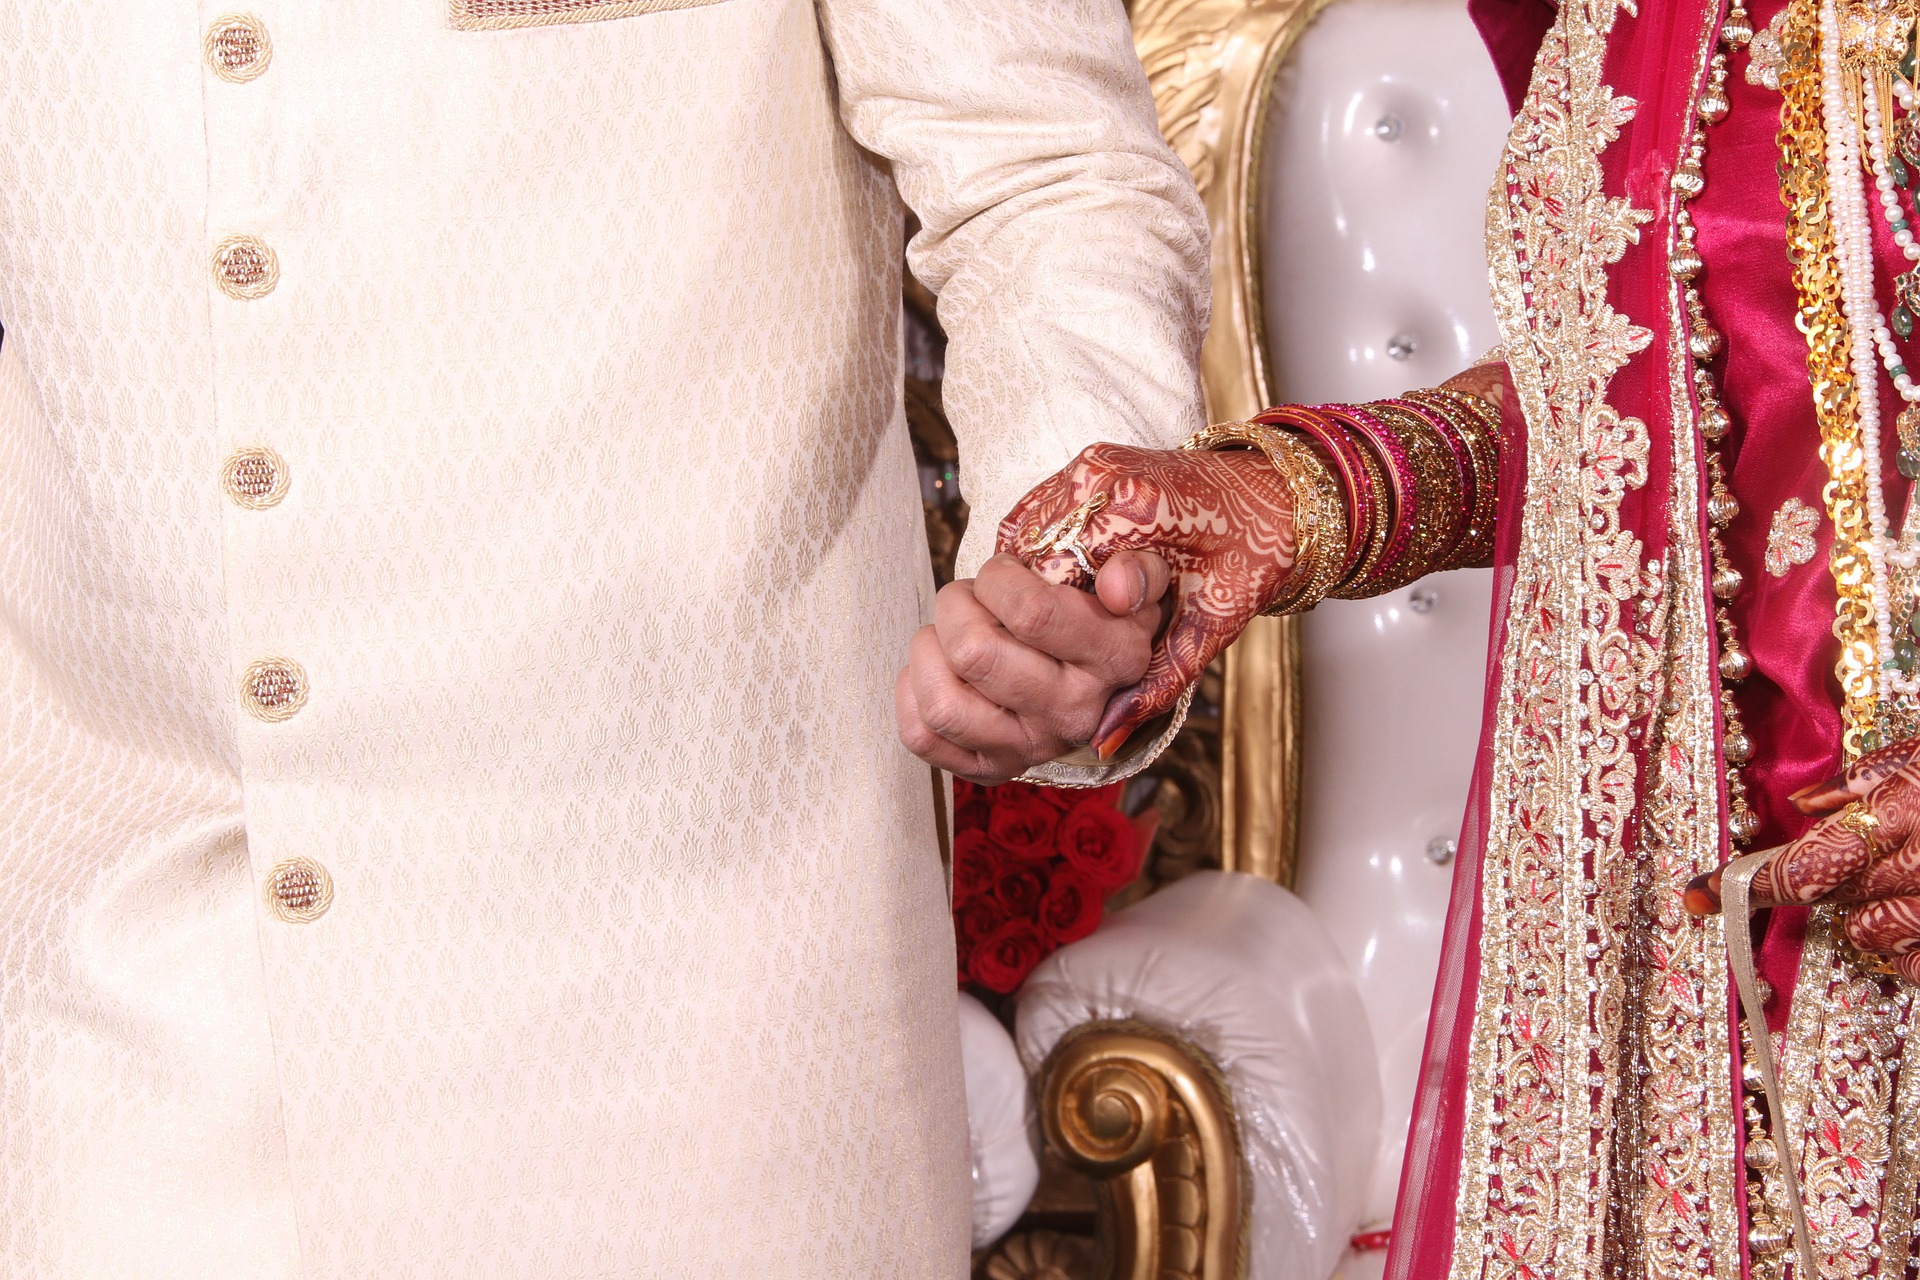 Una mujer murió antes de casarse y su hermana tomó su lugar en la boda